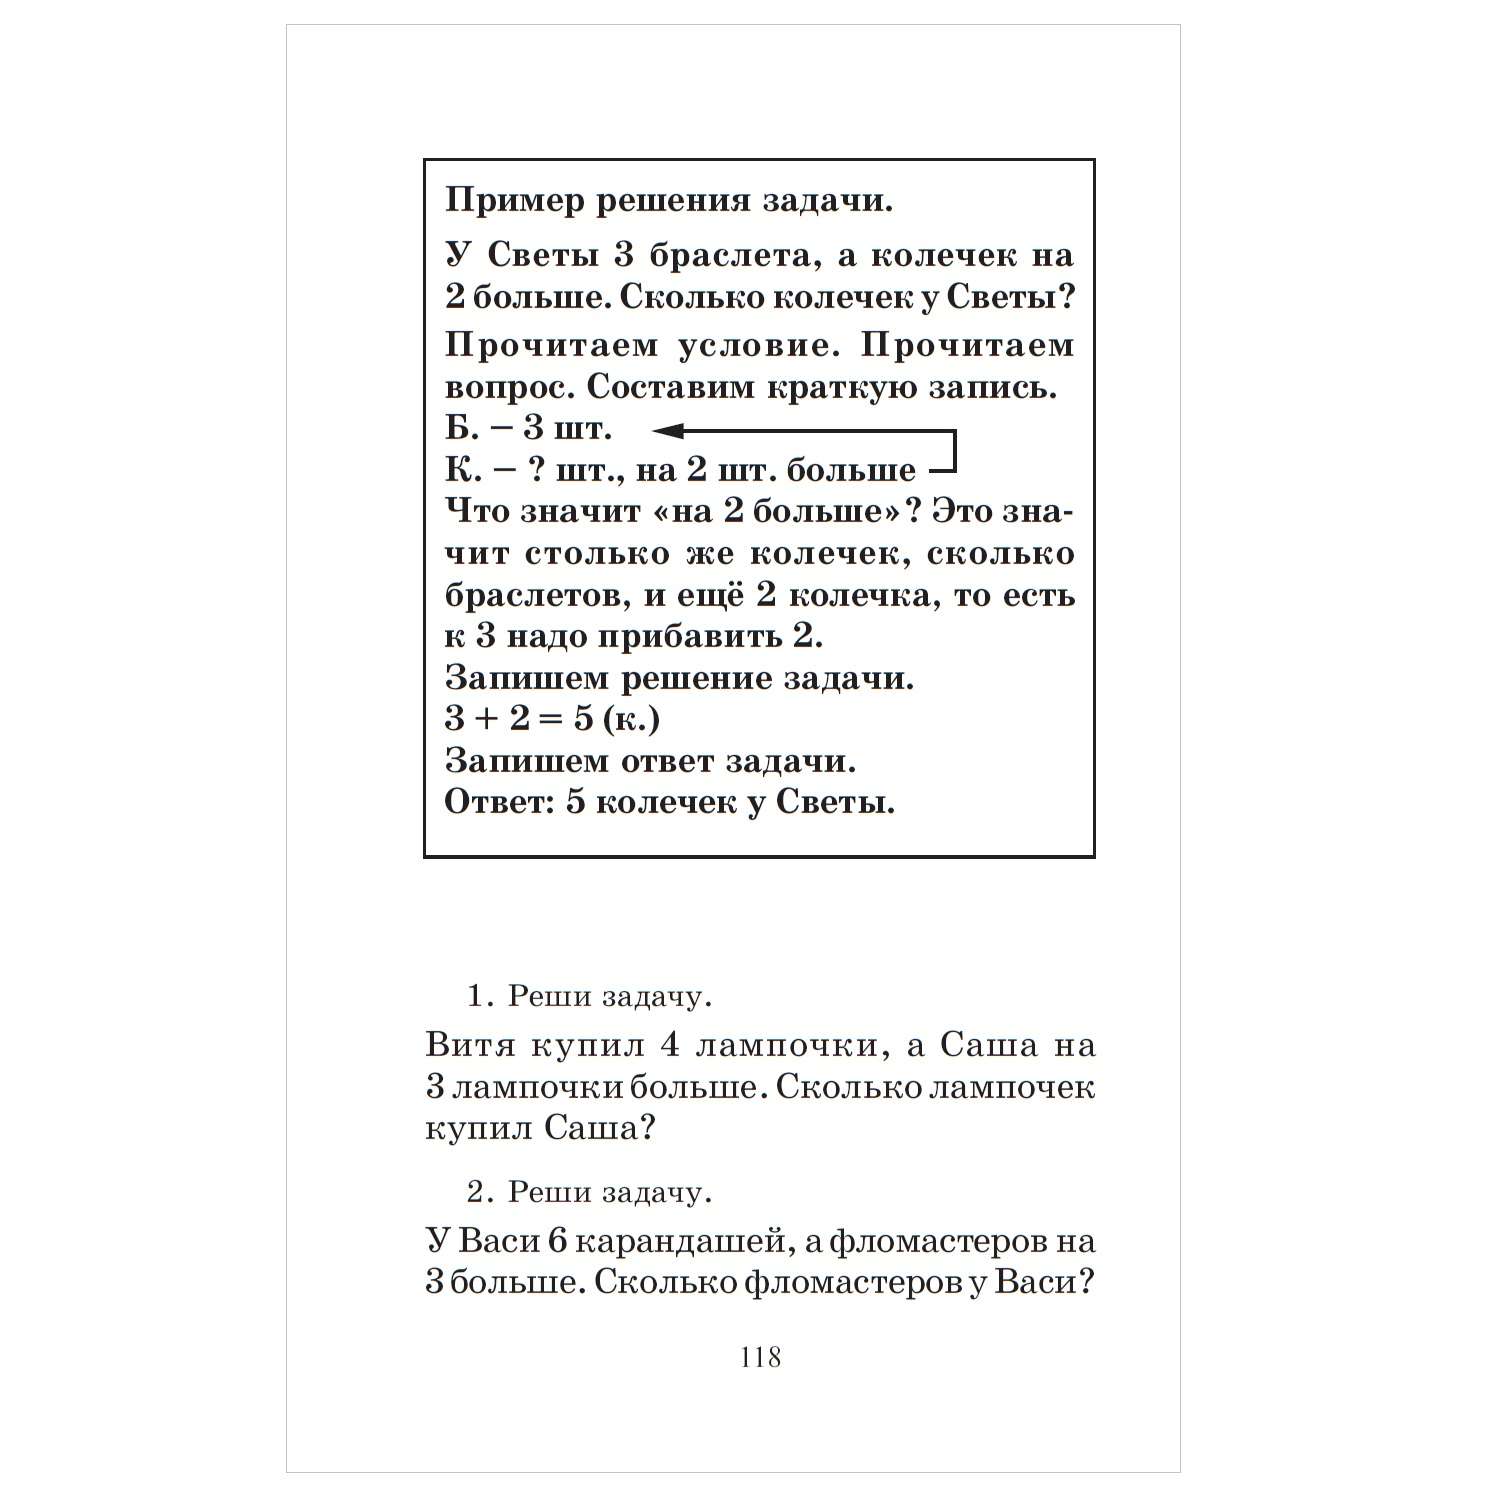 Книга АСТ Полный курс математики 1класс все типы заданий все виды задач примеров неравенств все контрольные - фото 7